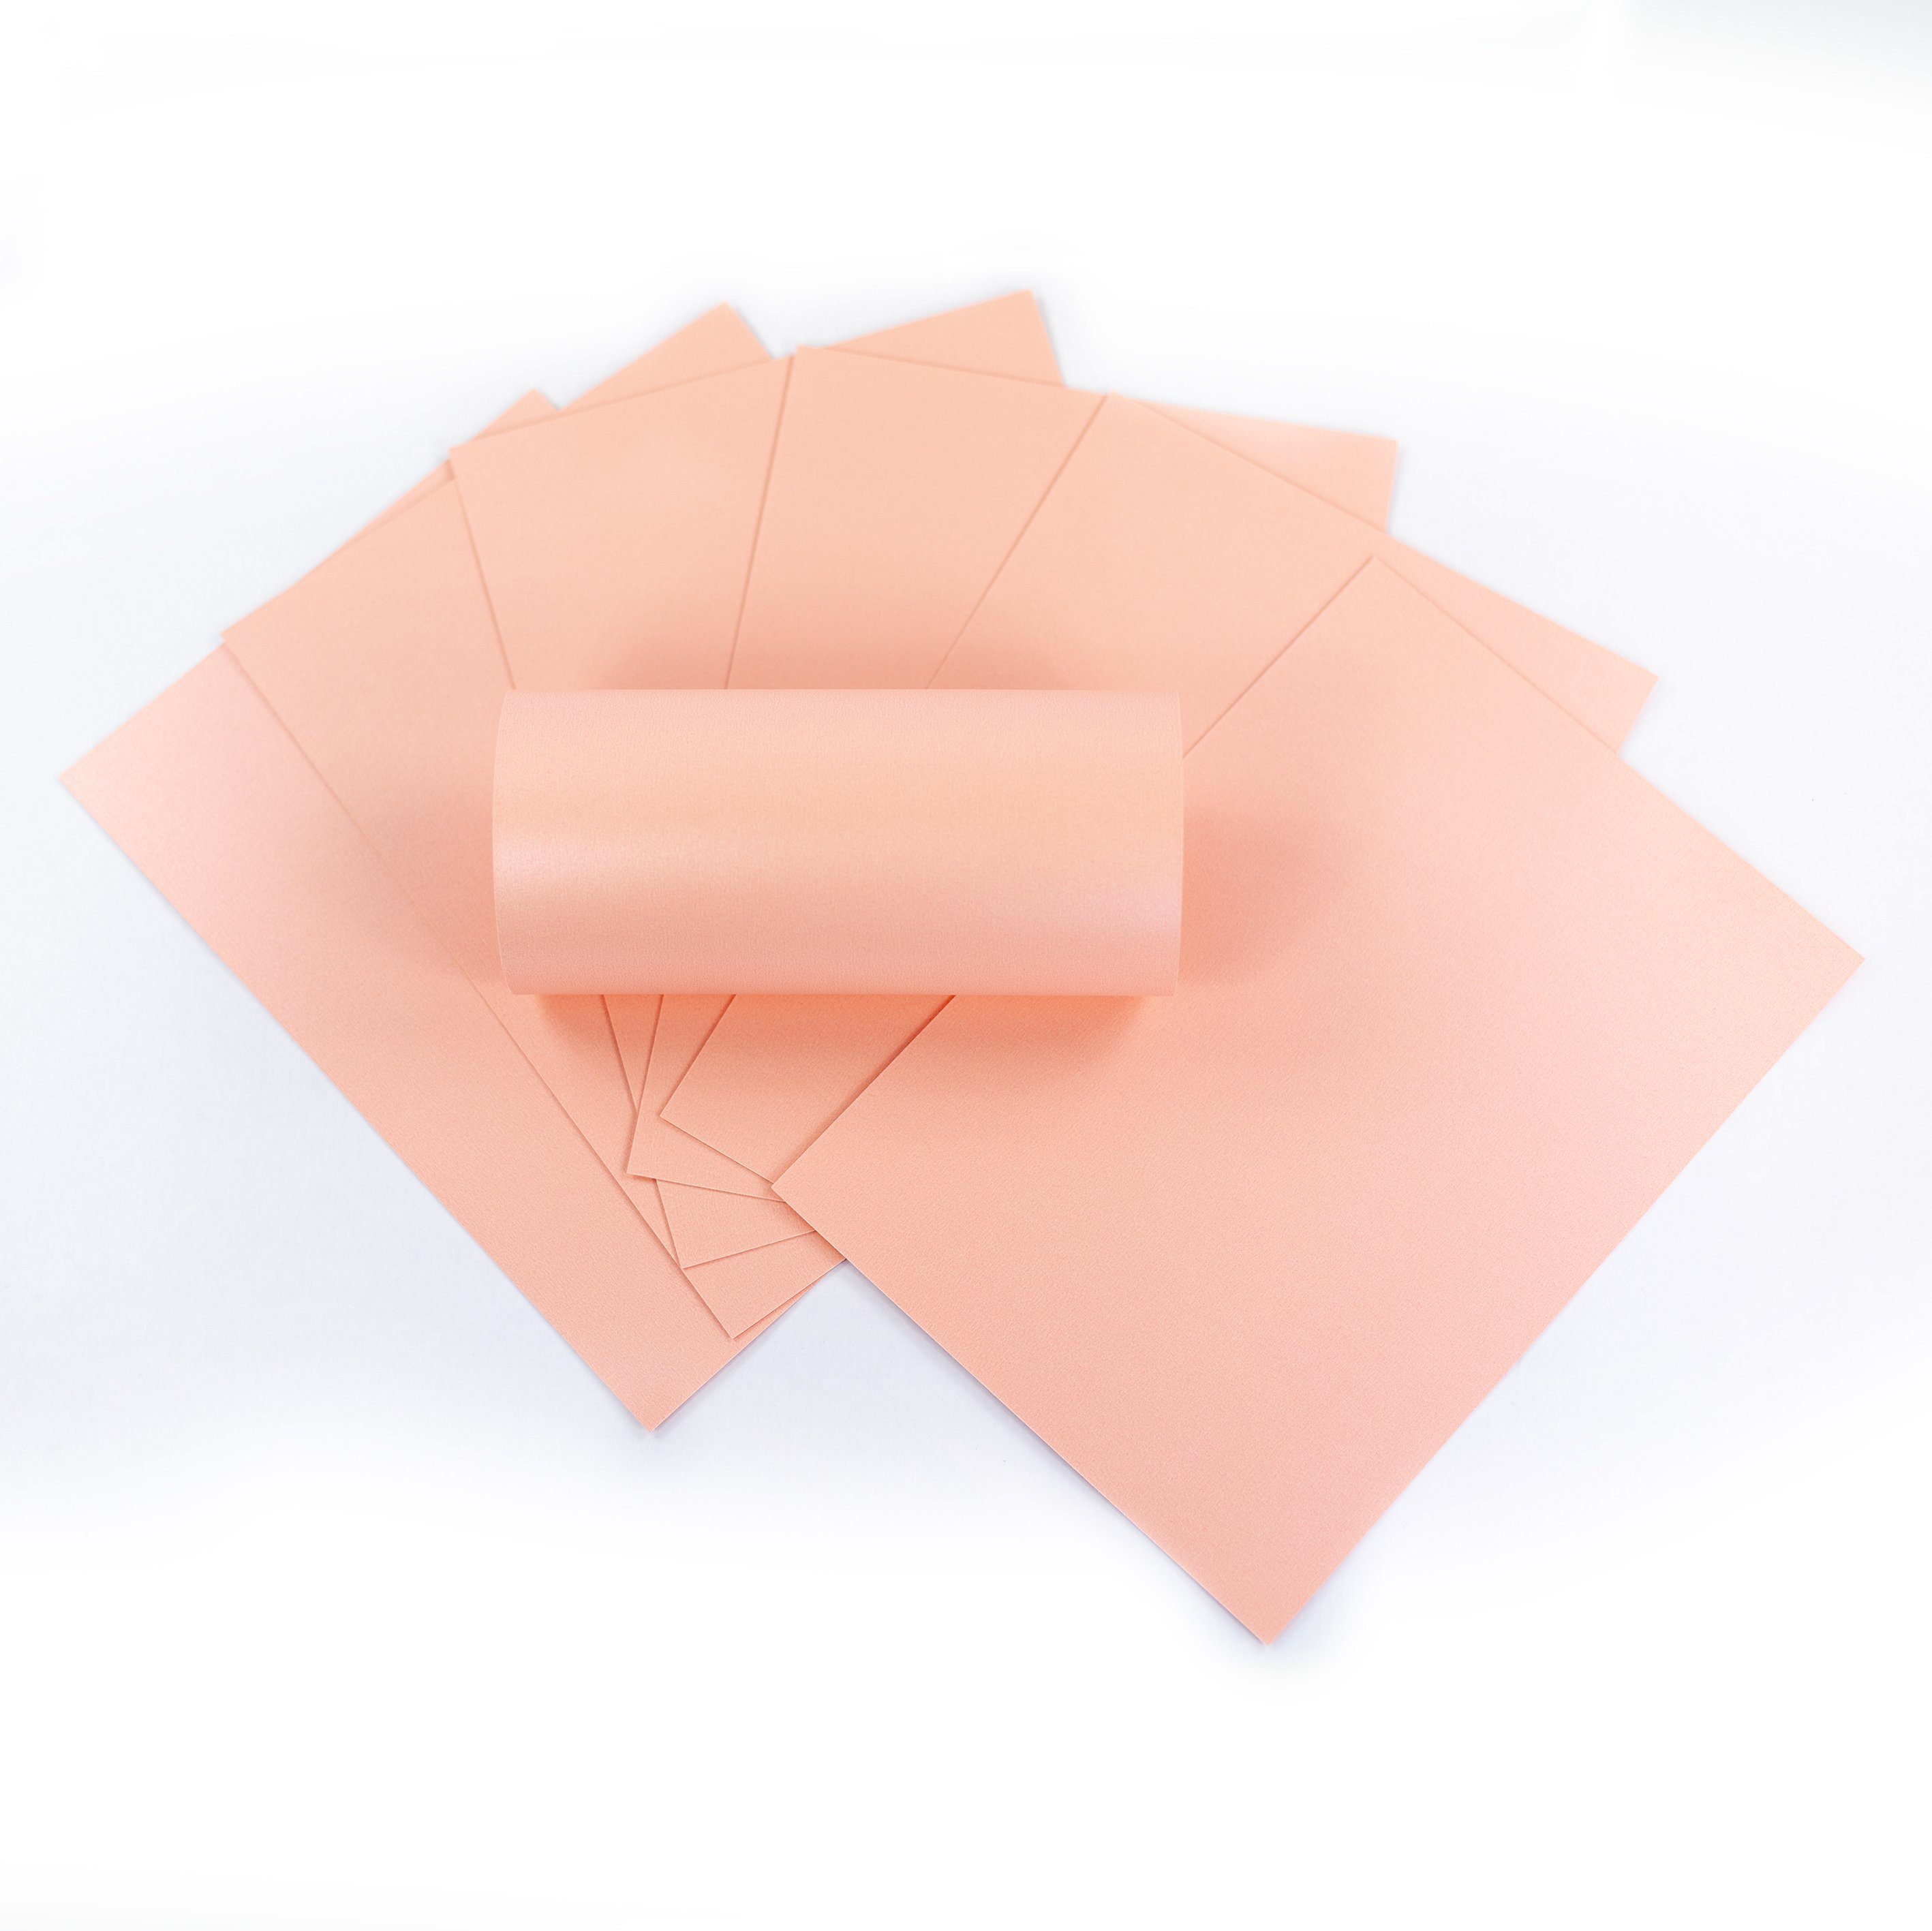 ZADAWERK Bastelkartonpapier Perlmuttkarton - 250 g/m²- A4 - 50 Blatt - Rosa, Perlig schimmerndes Dekorpapier zum Karten basteln und bedrucken